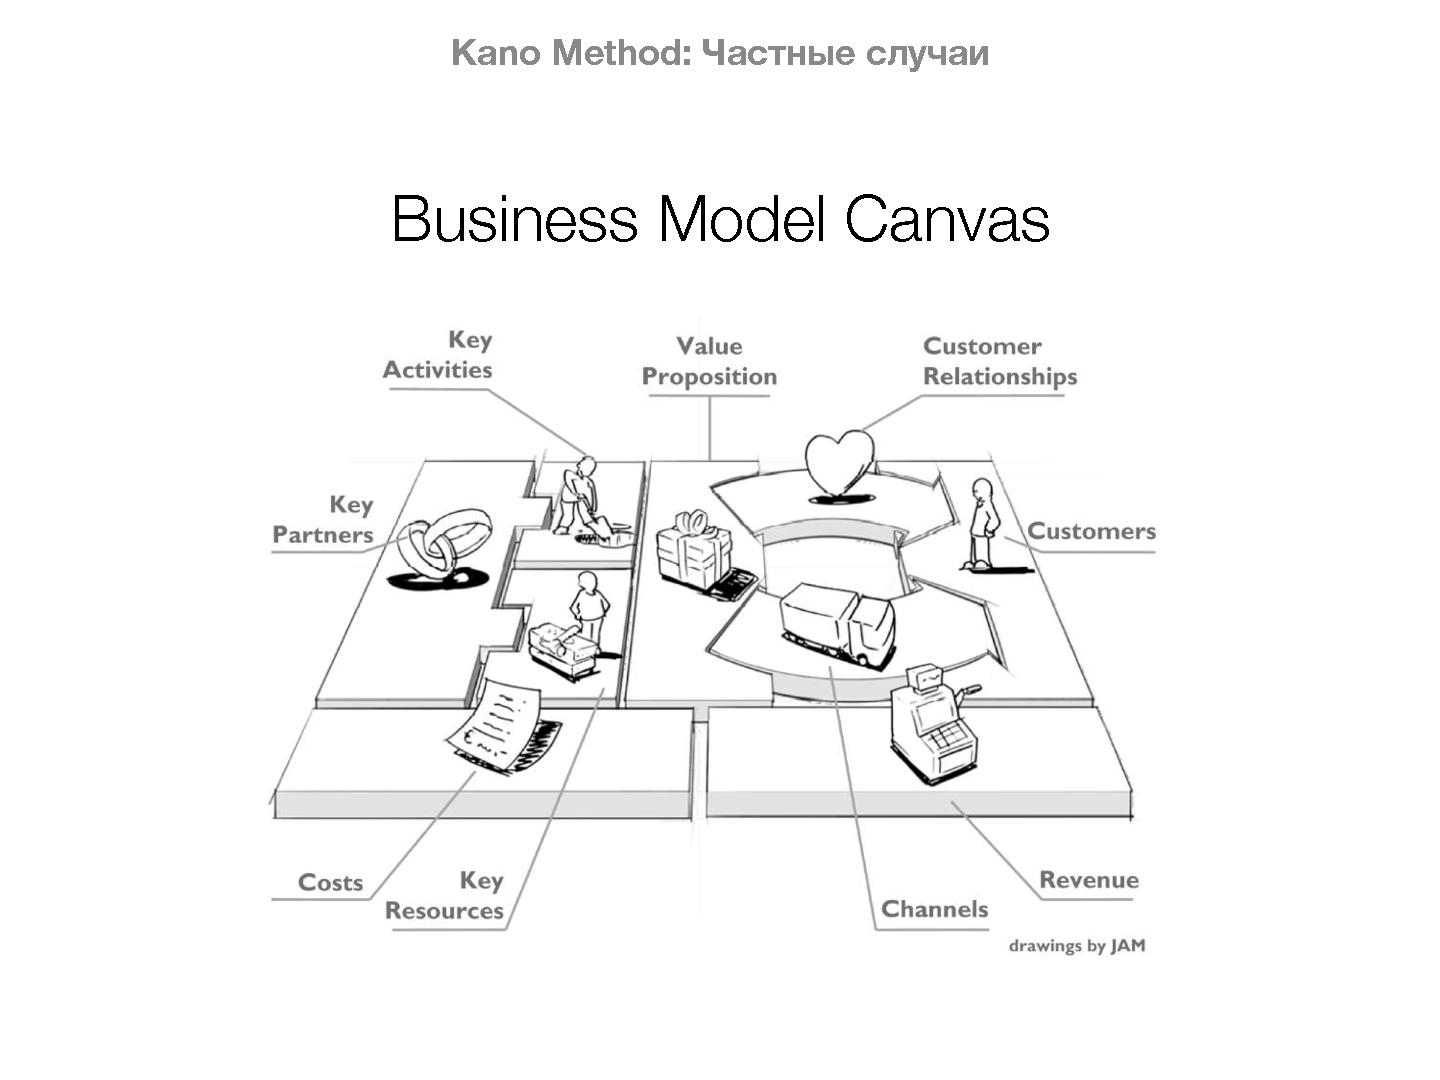 Файл:Нетипичные применения Кано анализа (Иван Михайлов, ProductMeetup, 2015-03-05).pdf